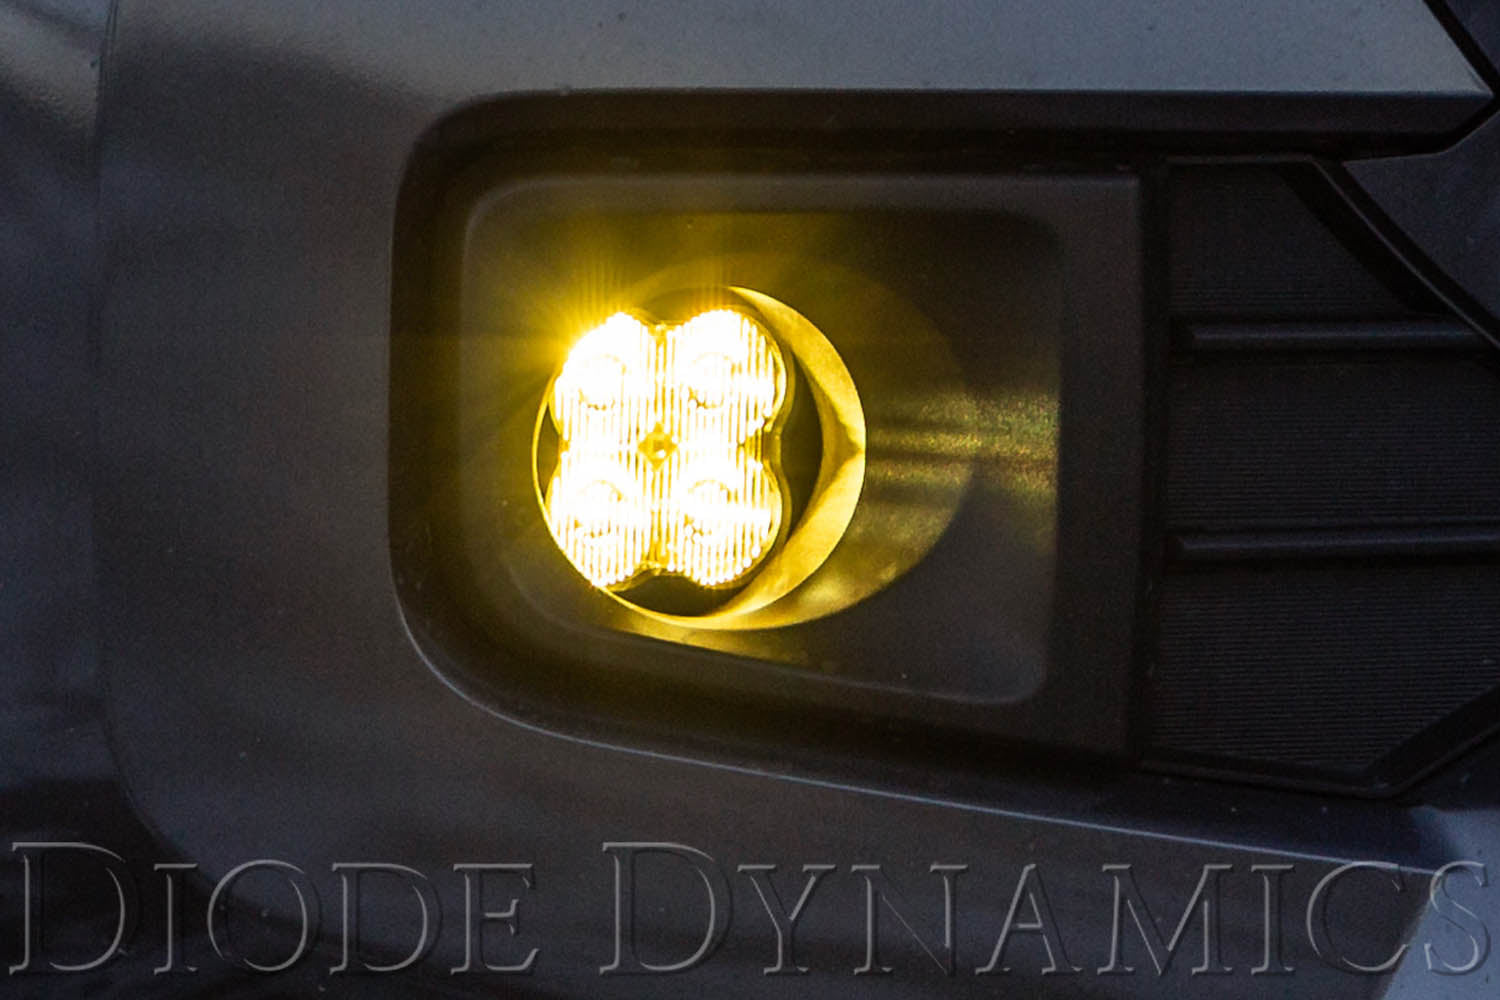 SS3 LED Fog Light Kit for 2014-2019 Toyota Tundra White SAE/DOT Driving Sport Diode Dynamics